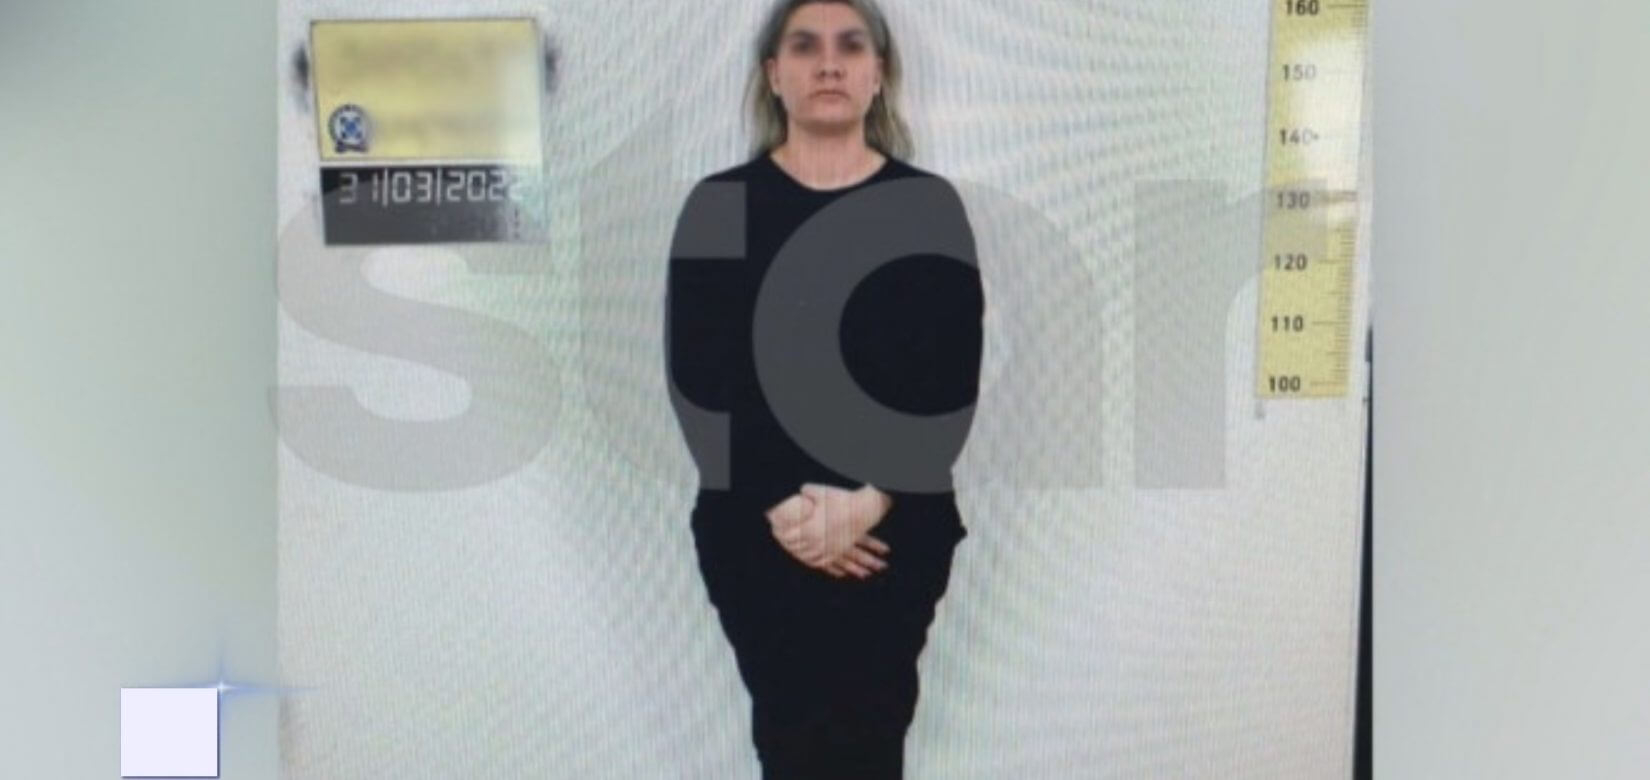 Ρούλα Πισπιρίγκου: Οι πρώτες φωτογραφίες μετά τη σύλληψή της  - Νέο στοιχείο "δένει" τη δολοφονία της Τζωρτζίνας